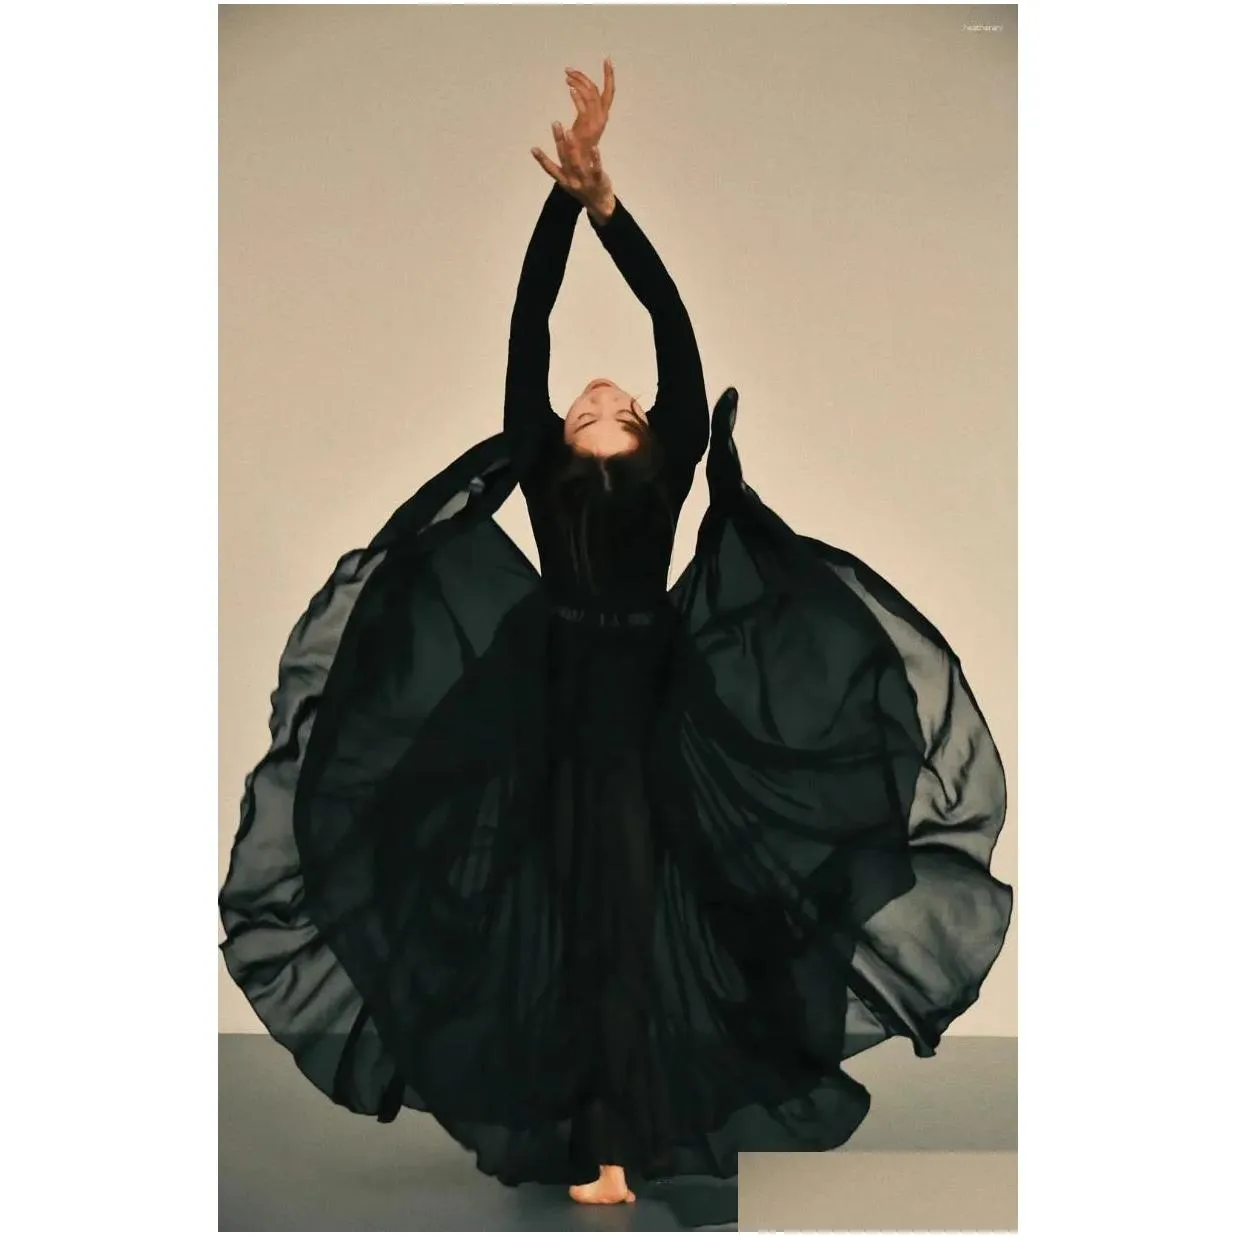 Bühnenkleidung Klassisches Tanzkleid Weibliche Elegante Xinjiang Performance Halblanger Rock Swing Modernes Balletttraining Drop Lieferung Appa Dhqea